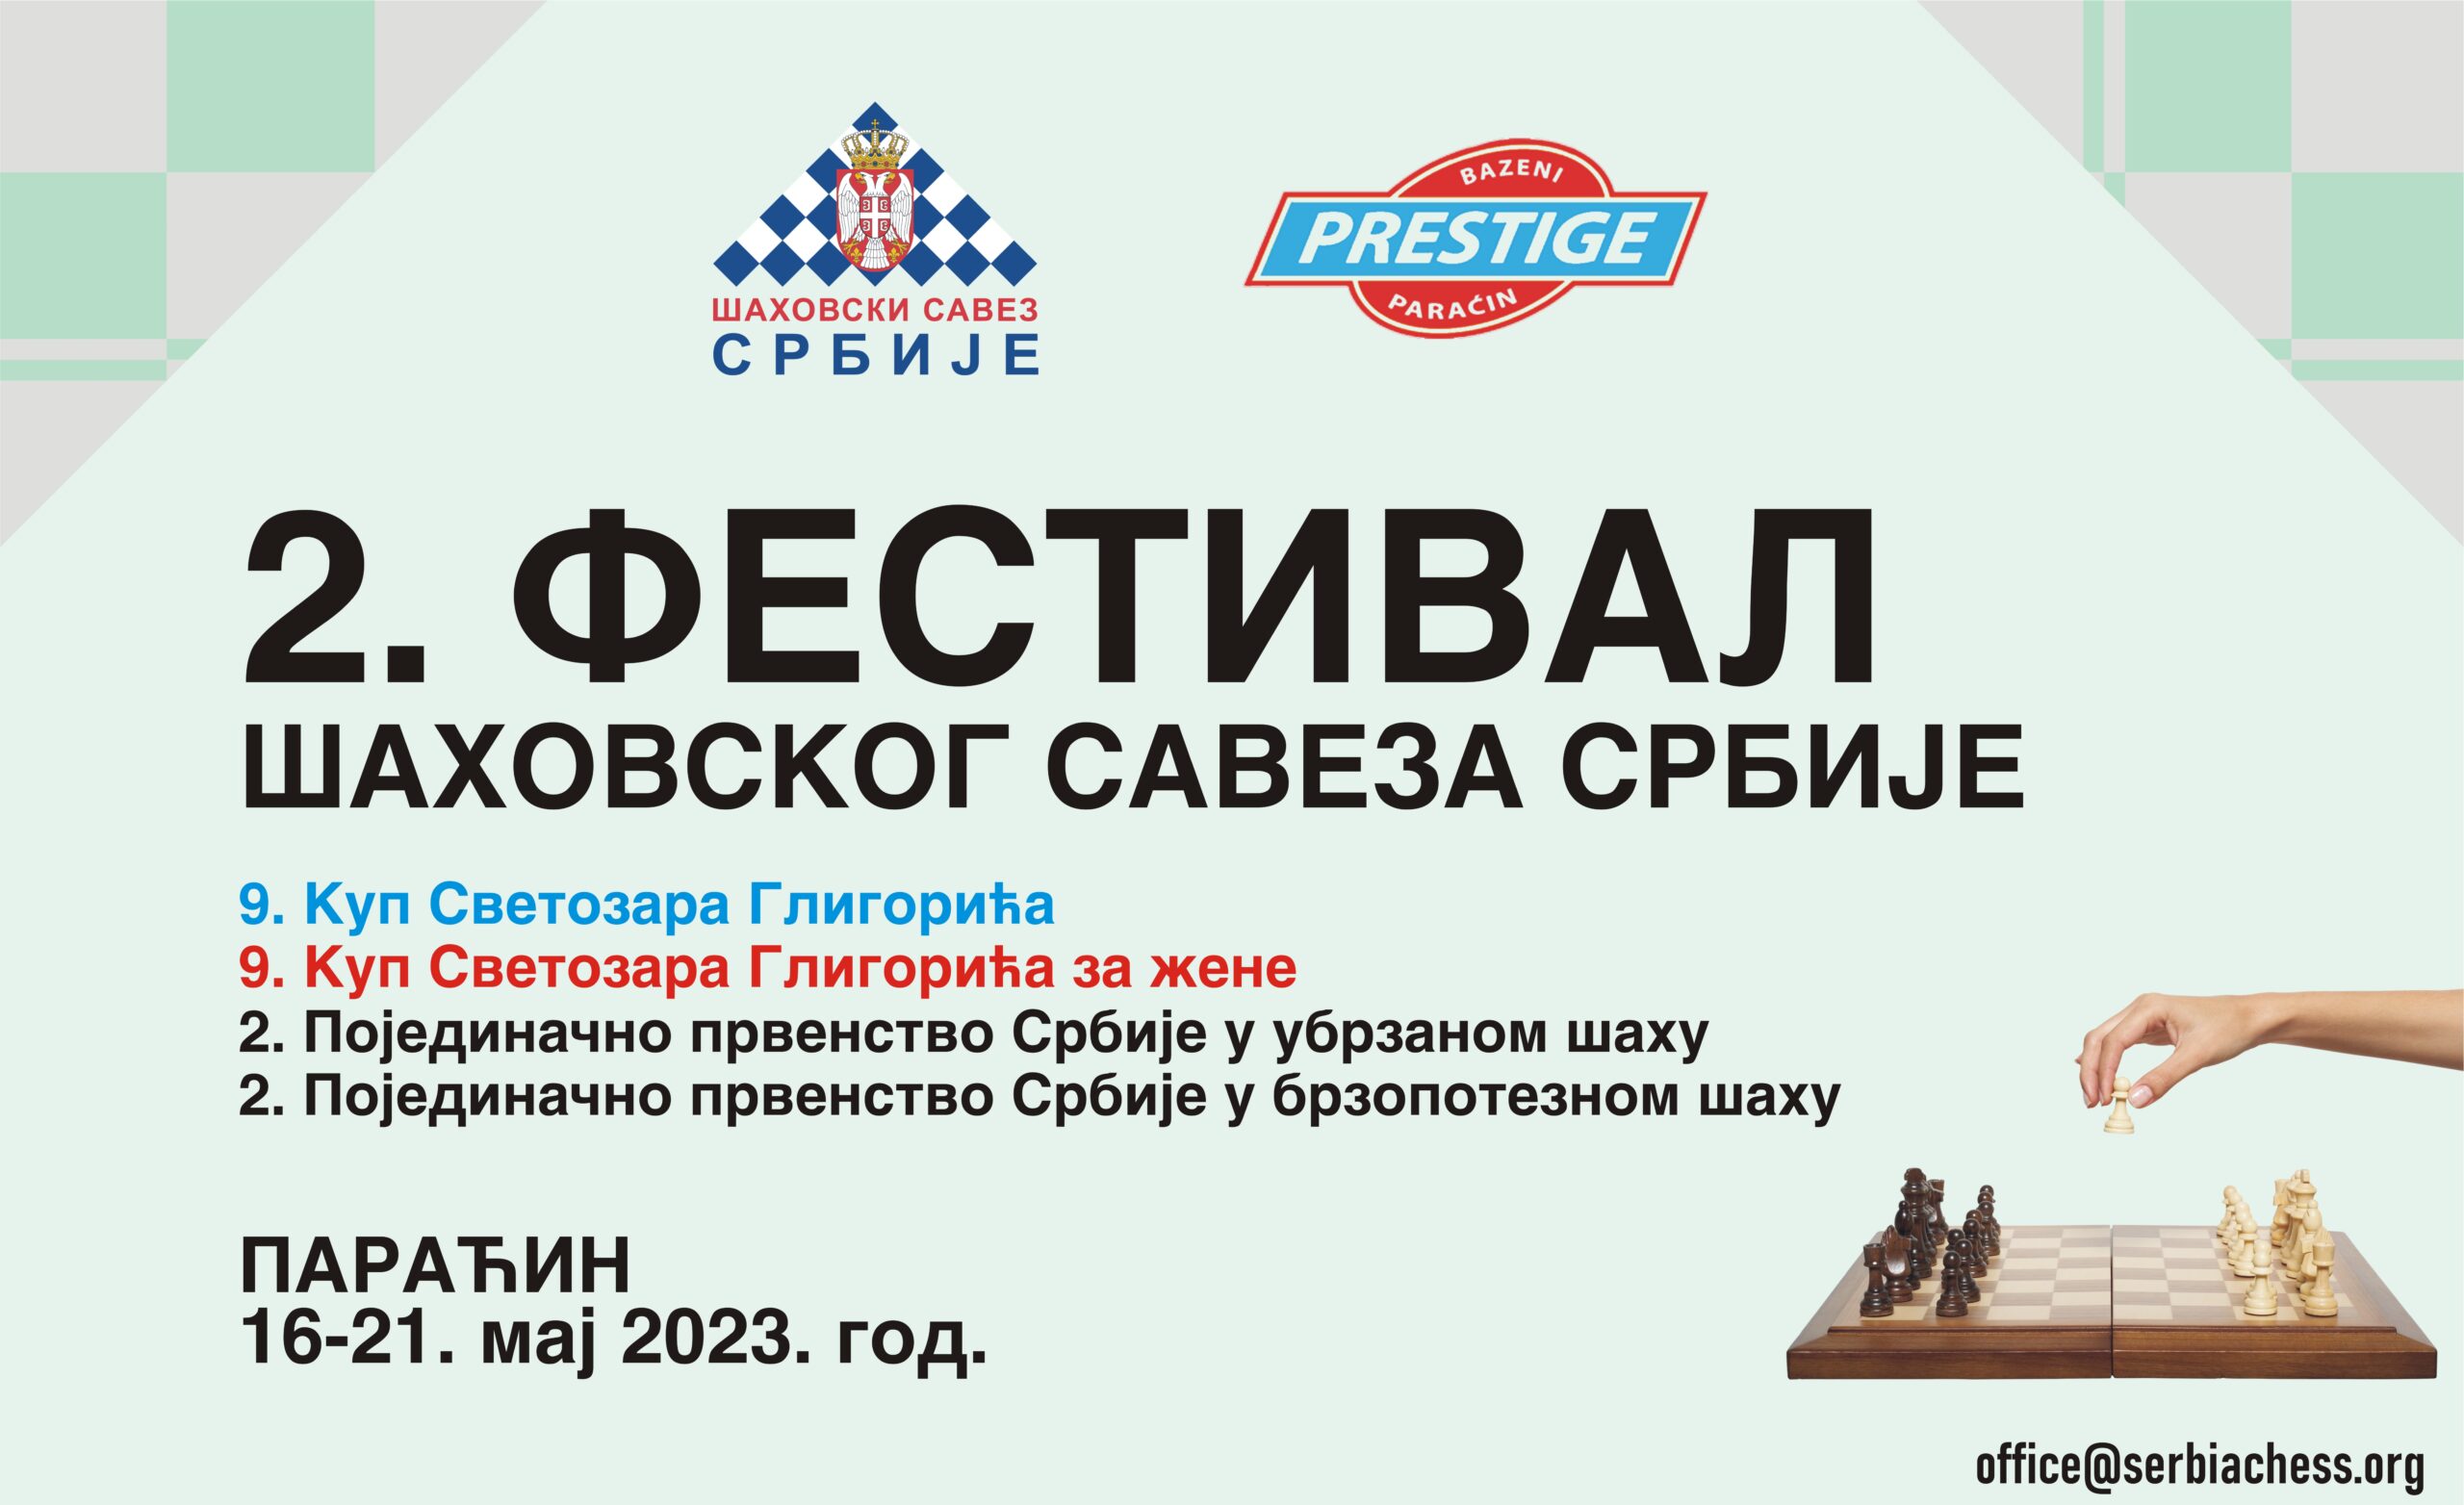 Na bazenima Prestiž u Paraćinu sutra počinje 2. Festival Šahovskog saveza Srbije